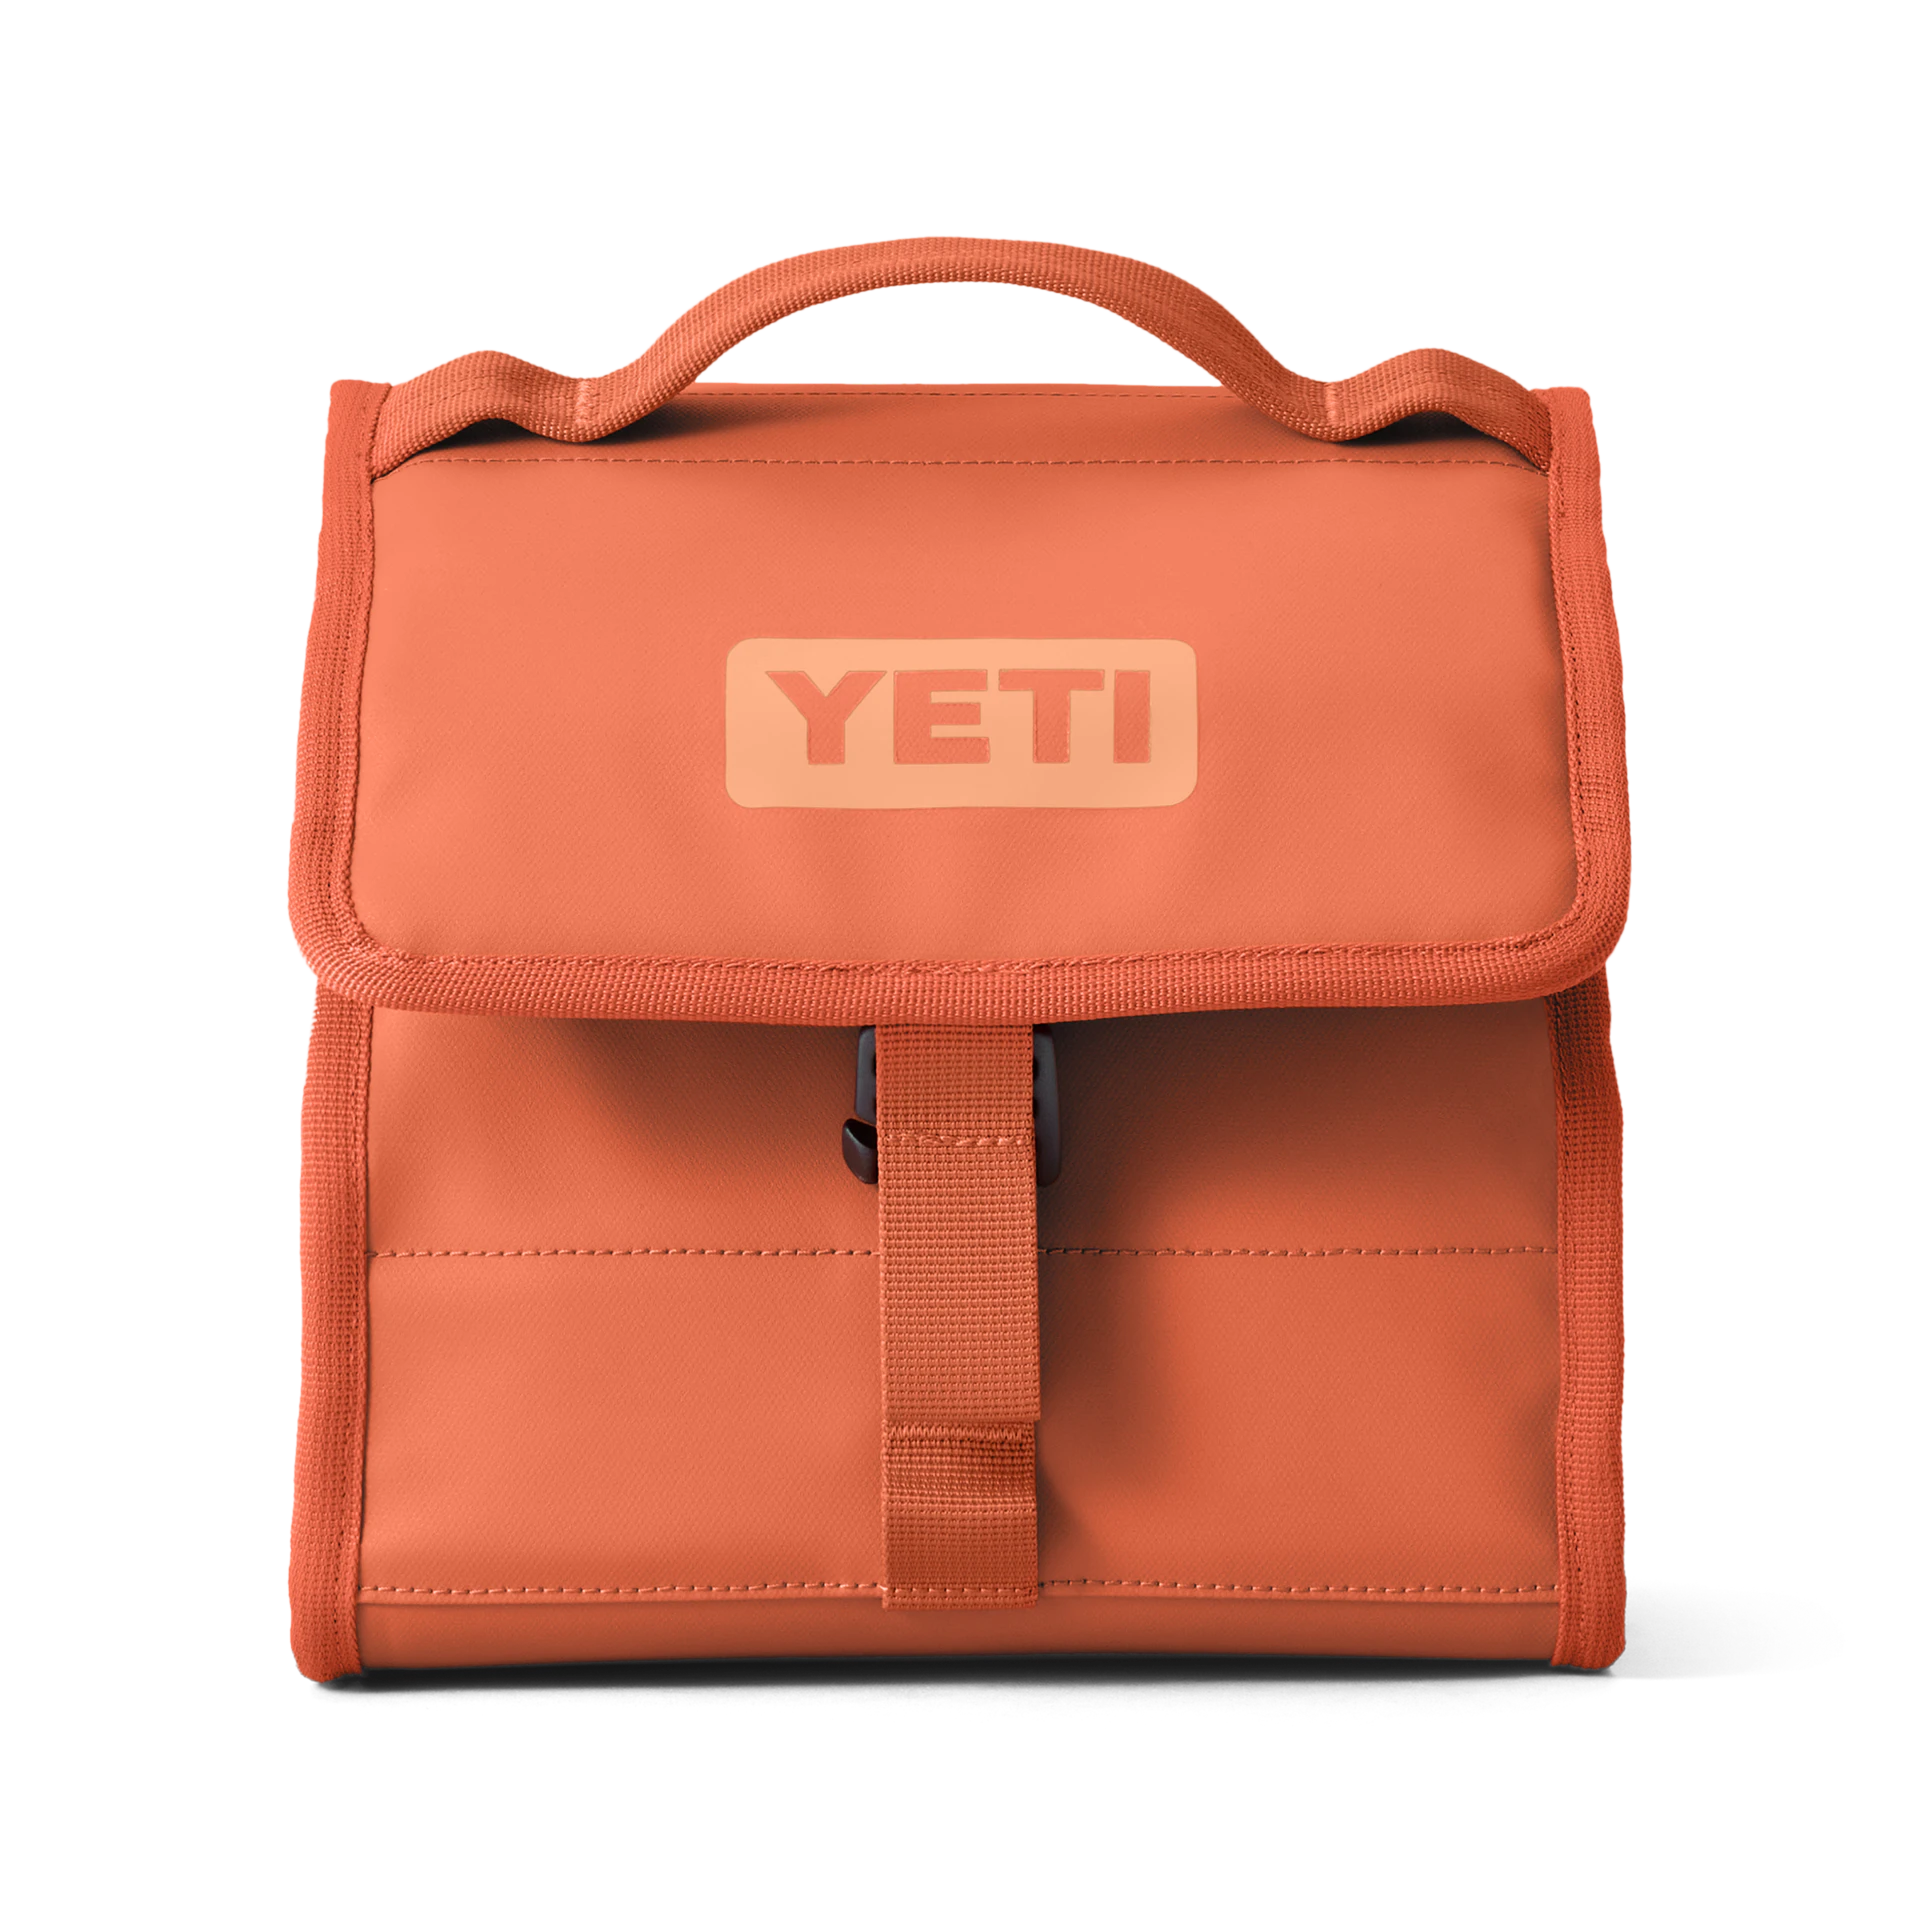 YETI- Daytrip Lunchbag in High Desert Clay